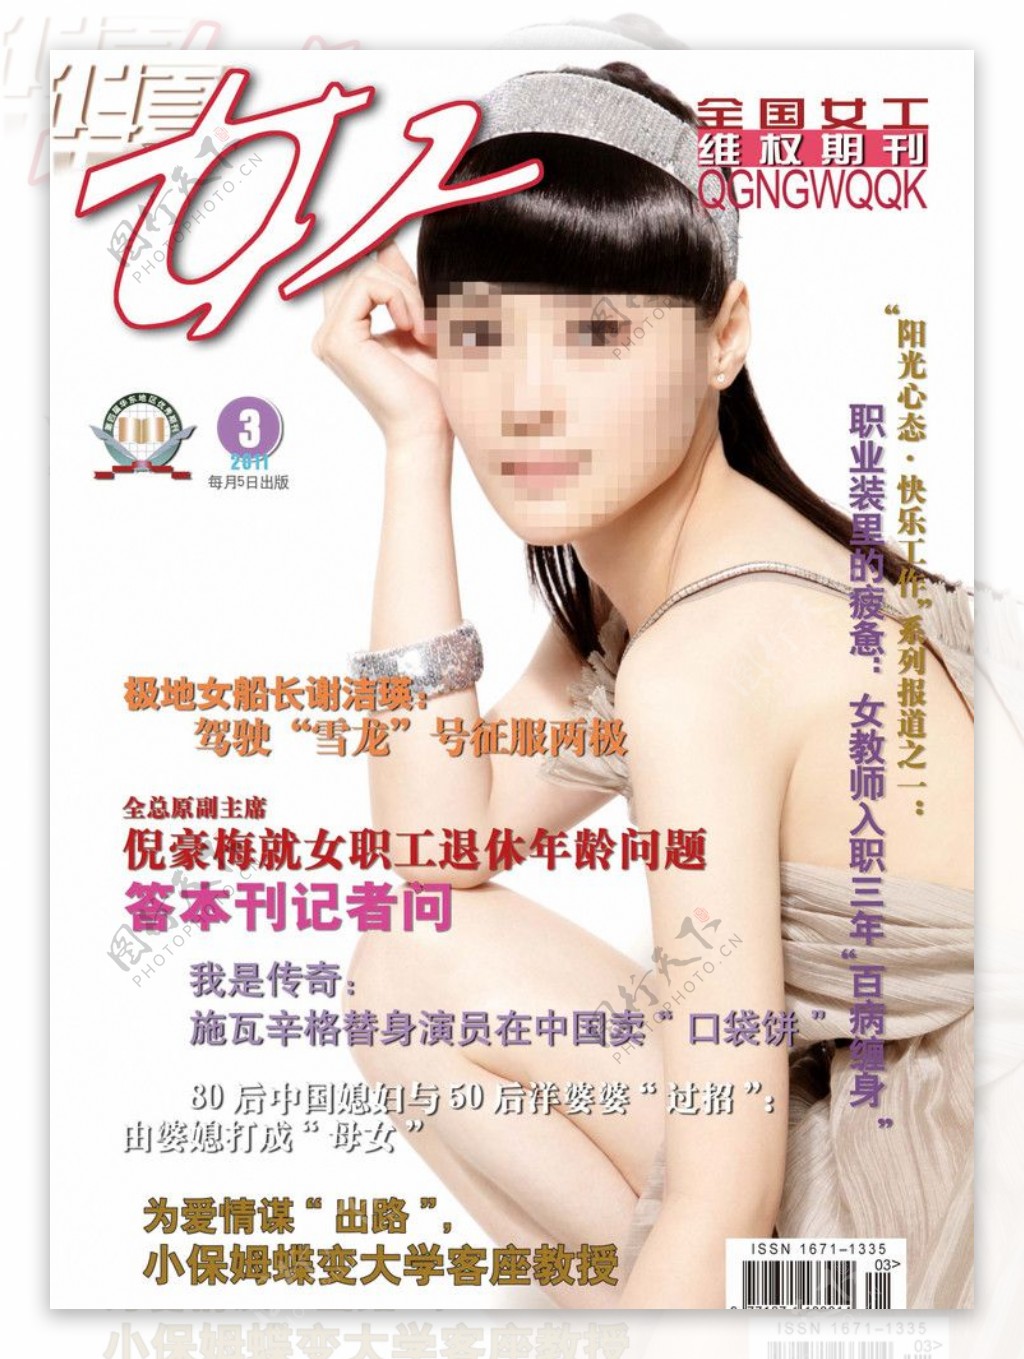 华夏女工2011年第3期杂志封面图片